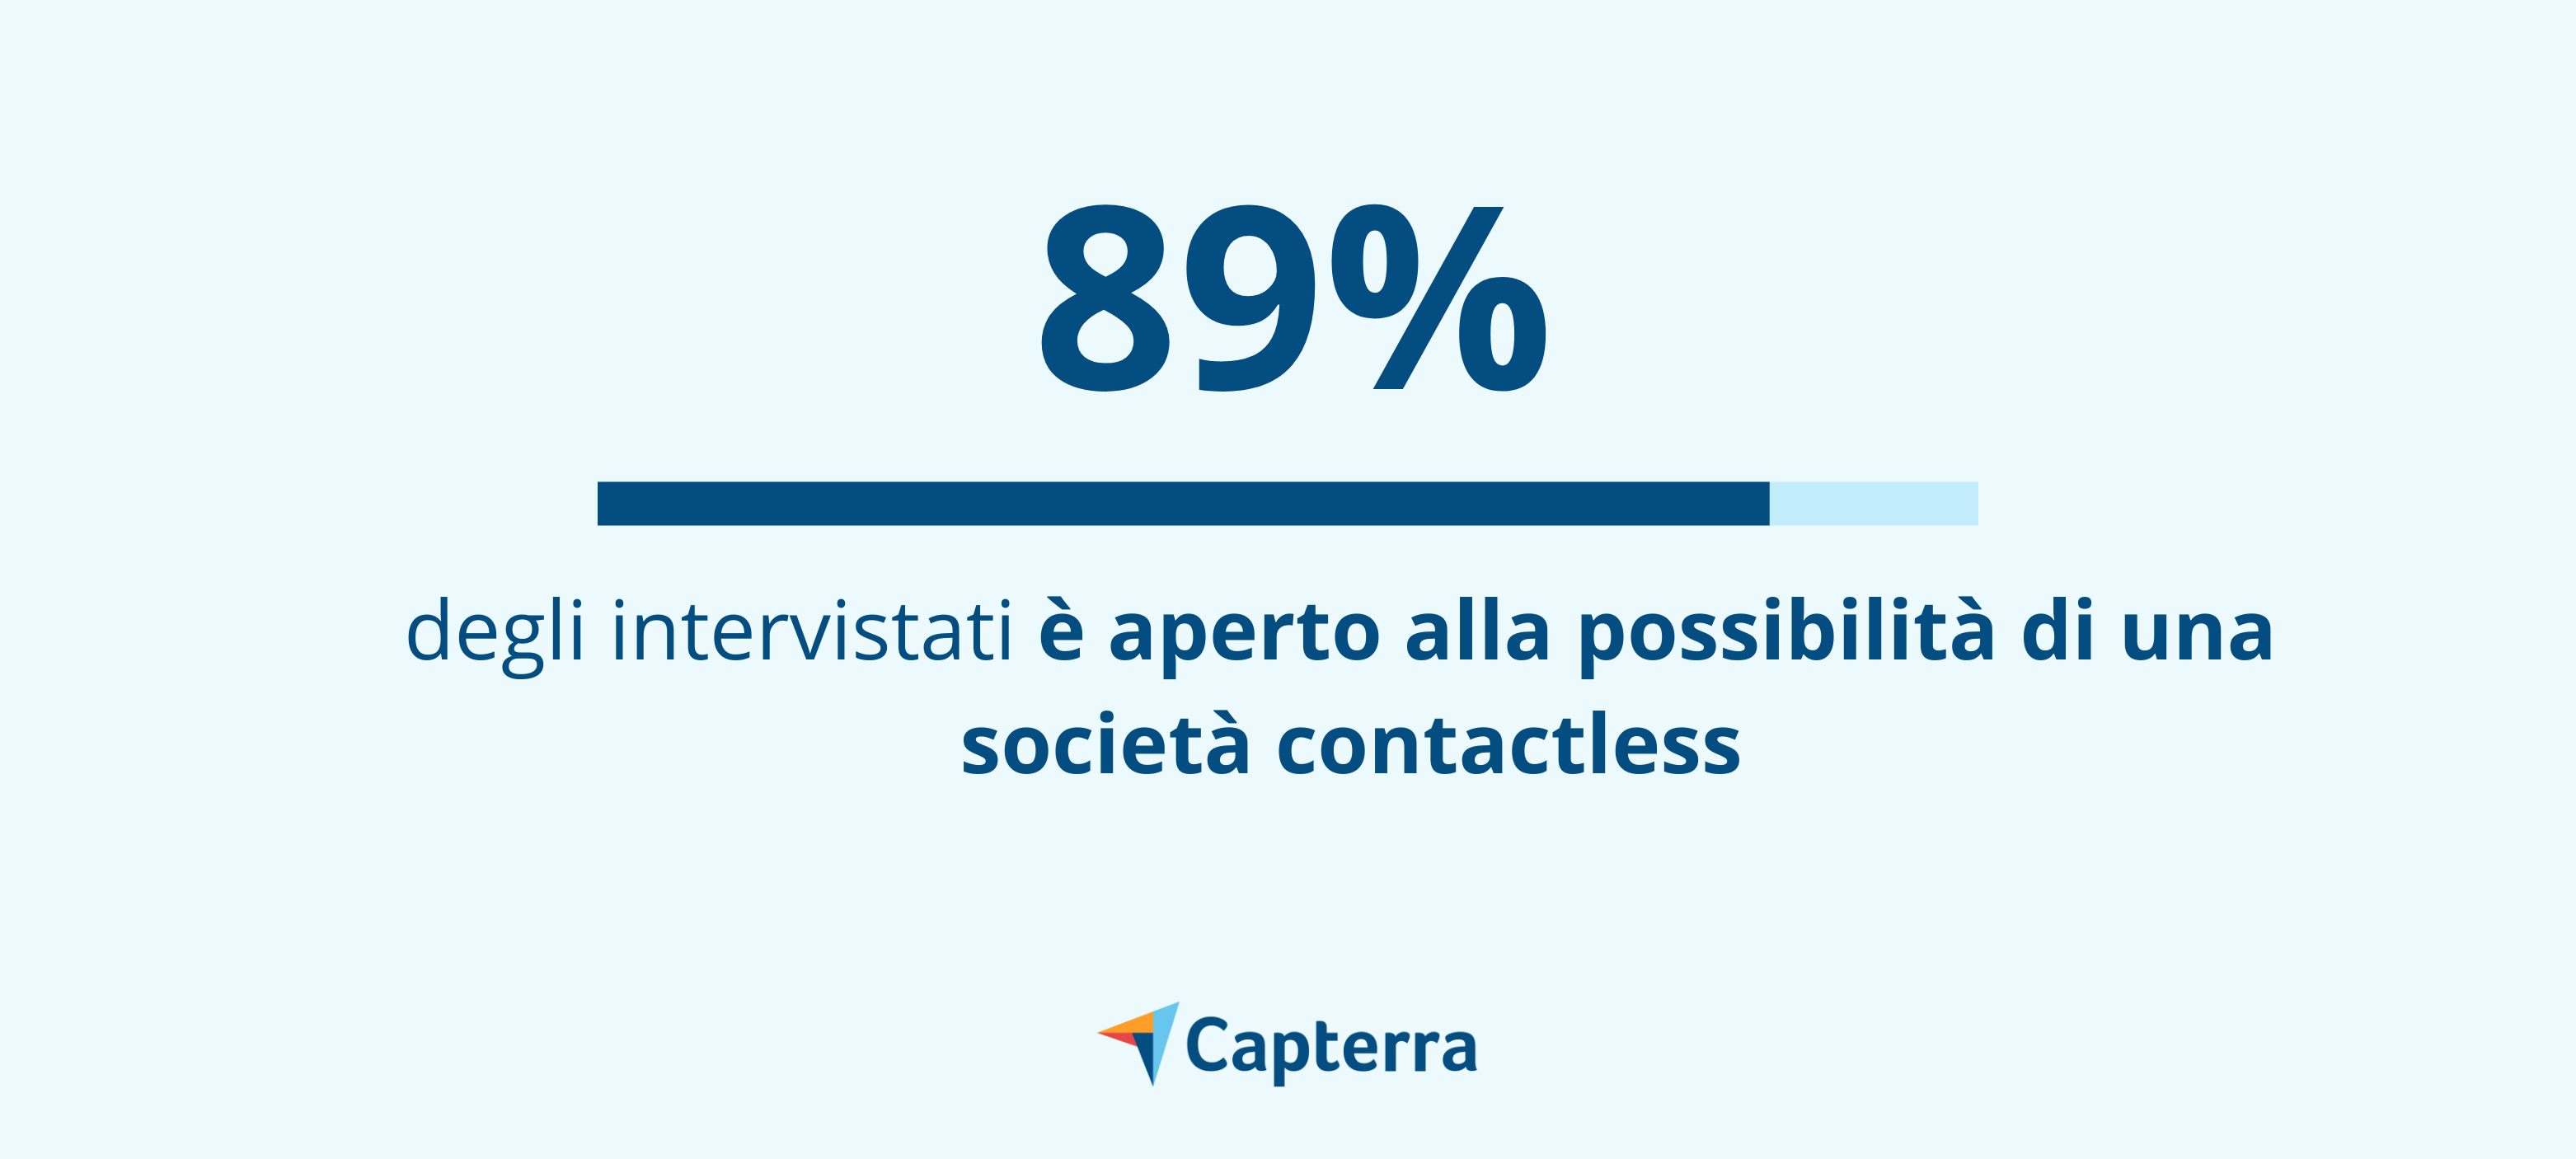 89% degli intervistati è aperto alla possibilità di una società contactless e ad i pagamenti contactless